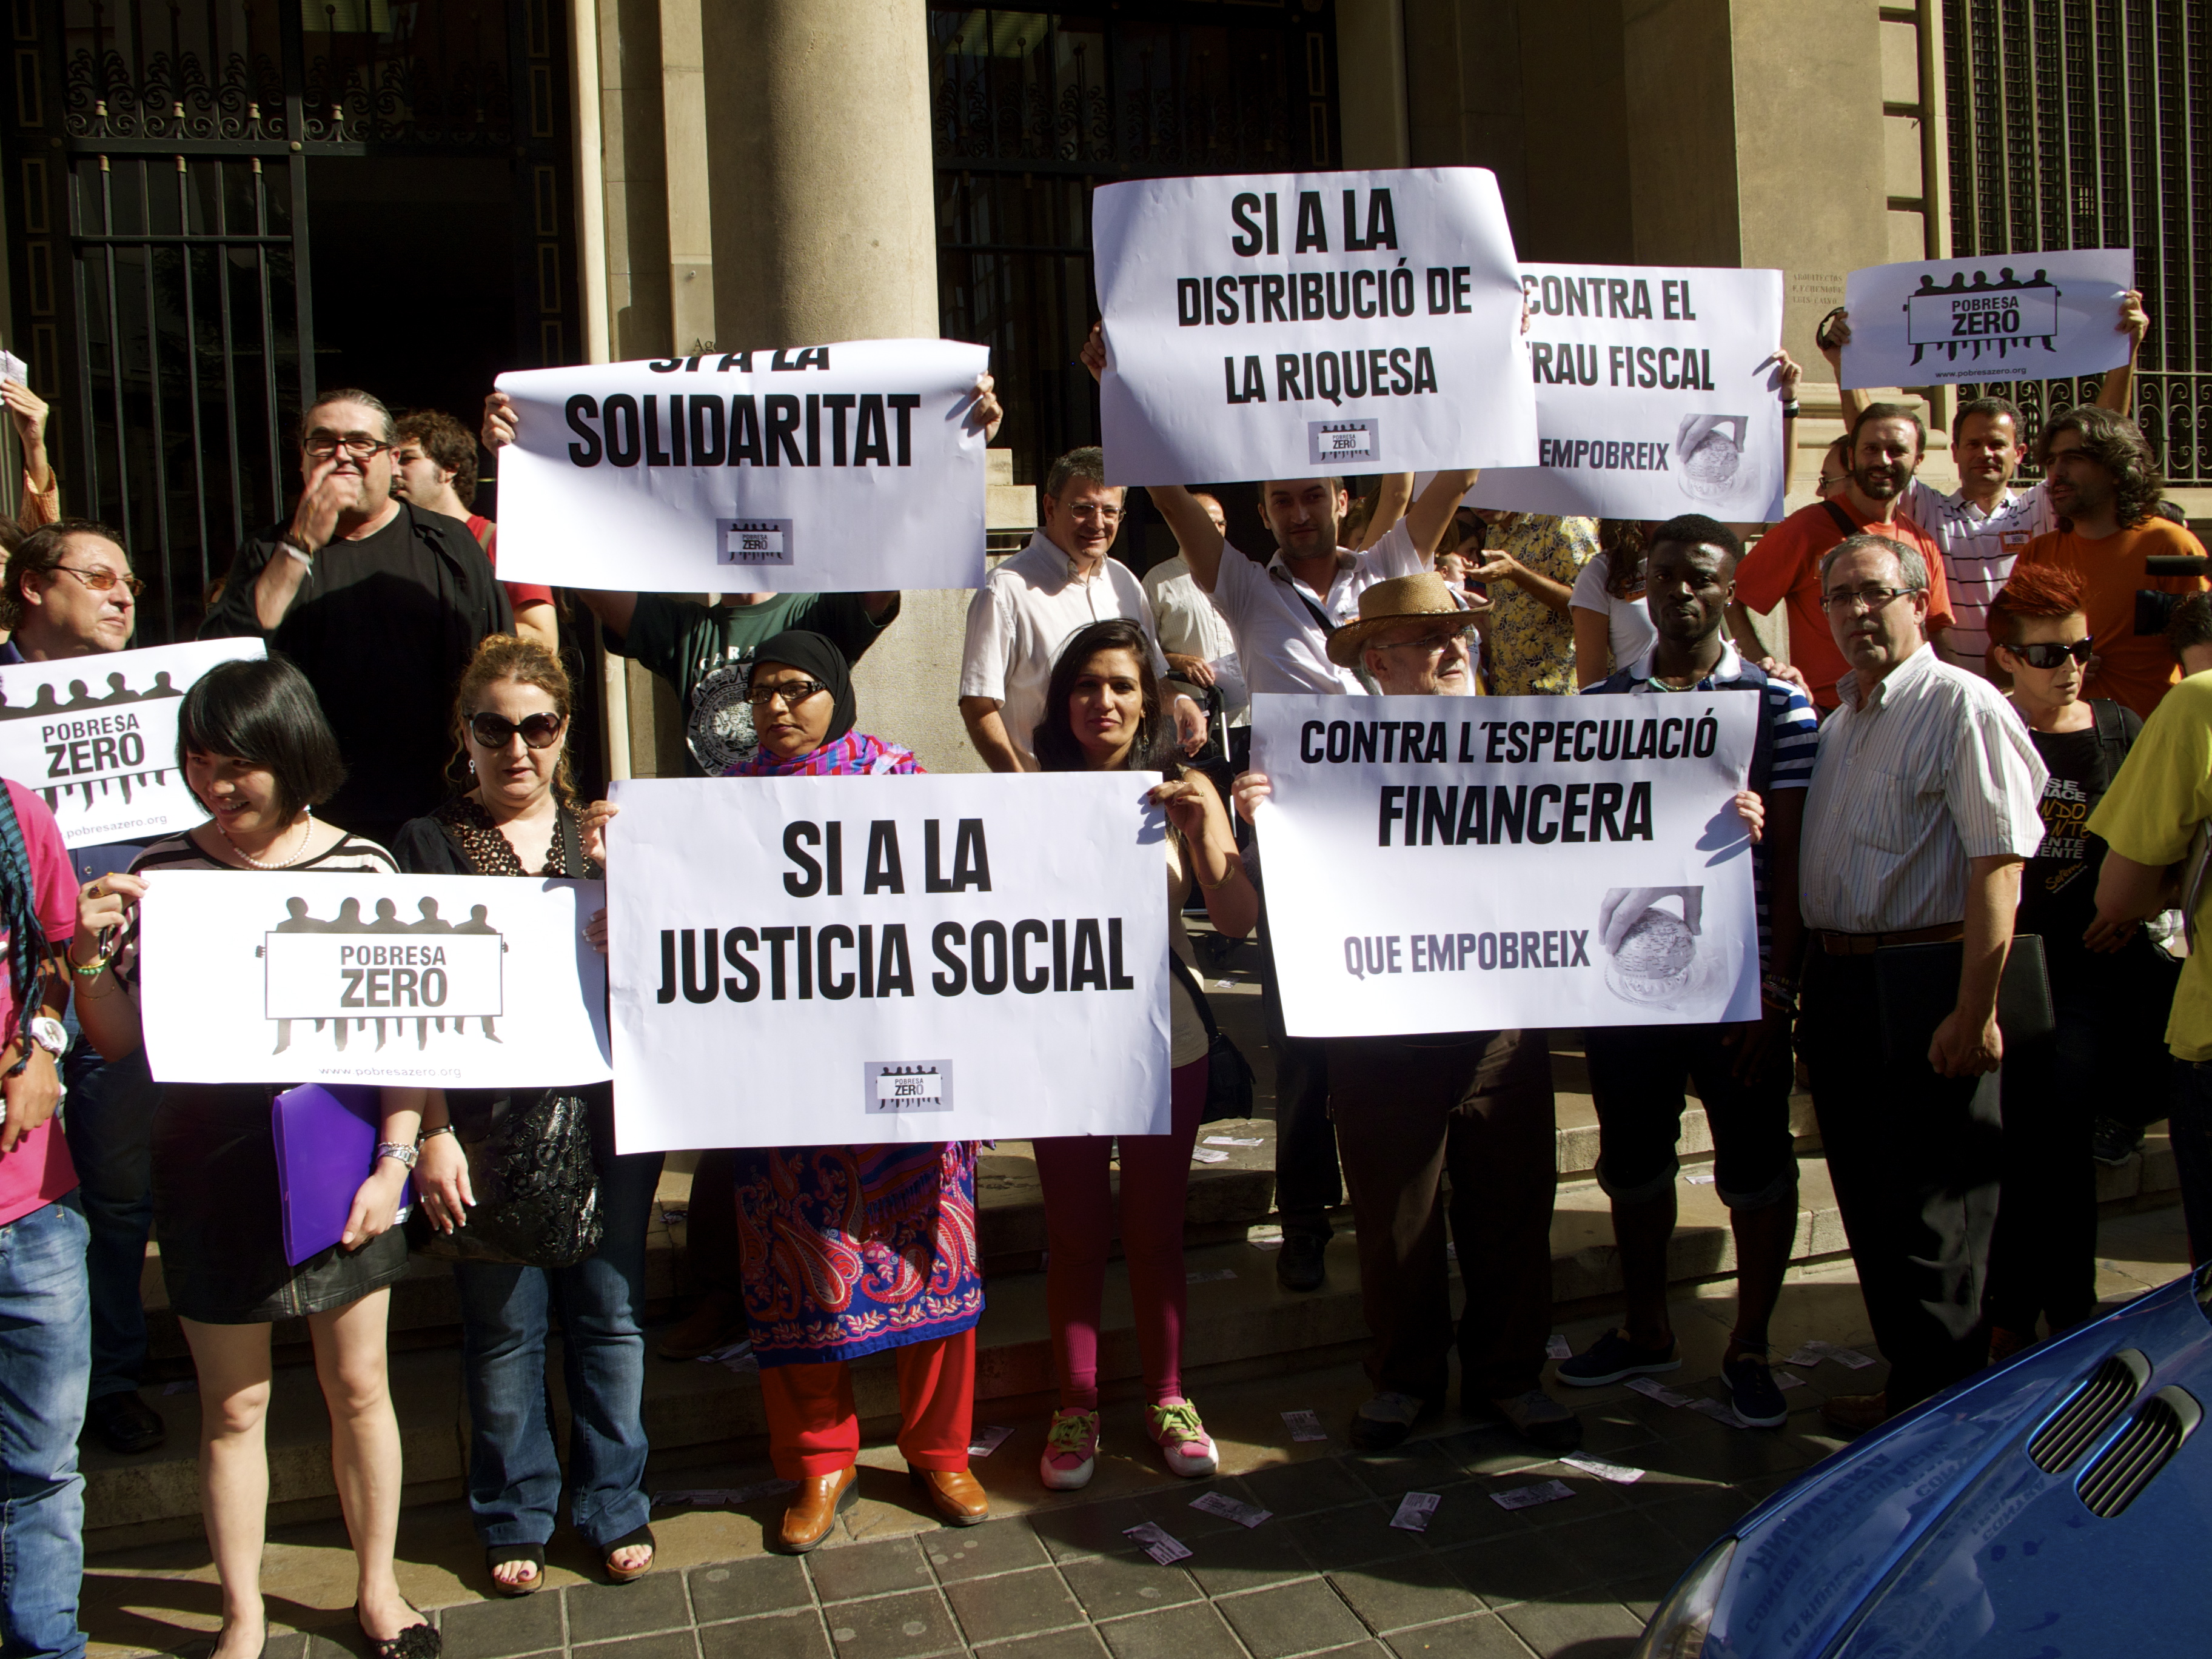 La Xarxa EAPN CV en la concentración de Pobresa Zero frente a la Delegación de Hacienda en Valencia contra el fraude fiscal y la riqueza que empobrece. El #17O 